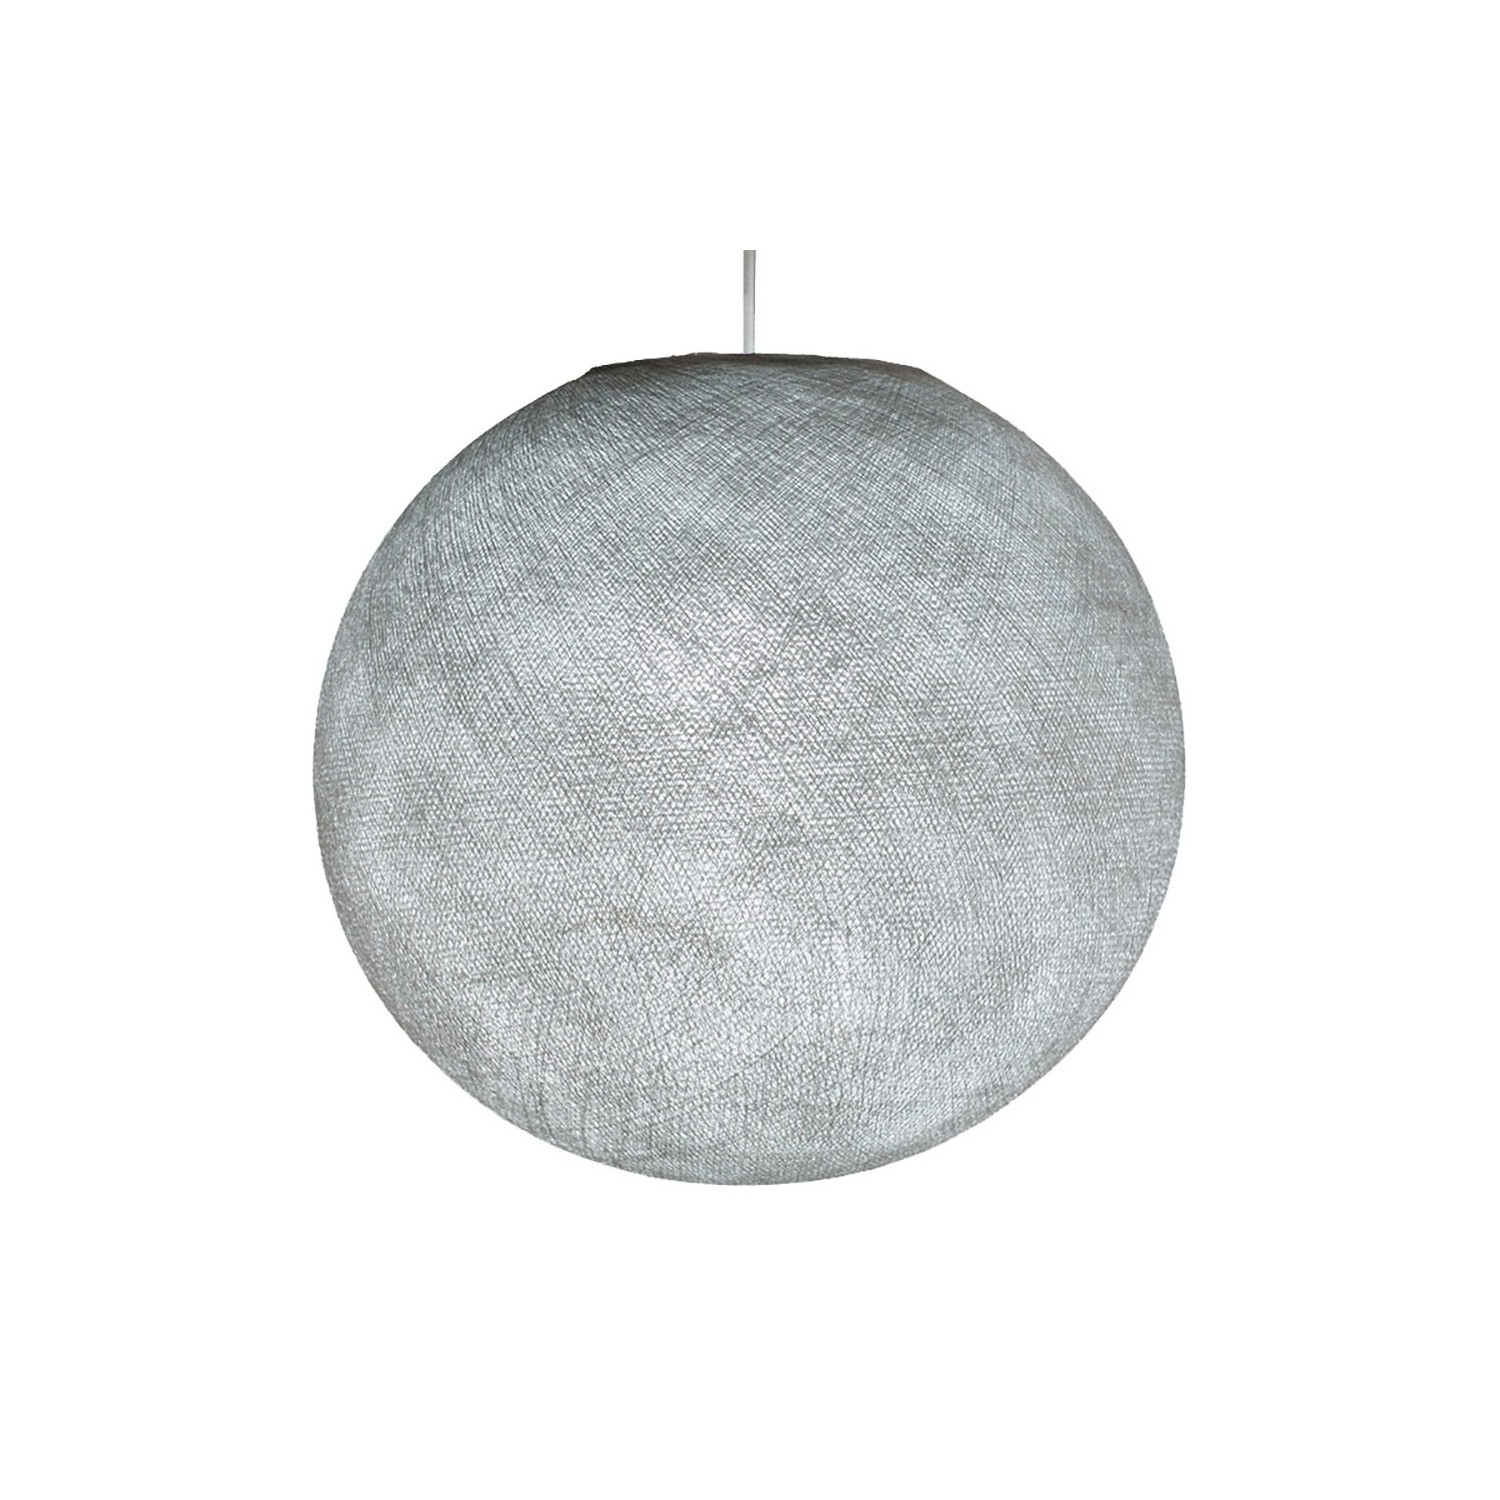 Pantalla Esfera M de hilo de poliéster, diámetro 35cm - 100% hecho a mano